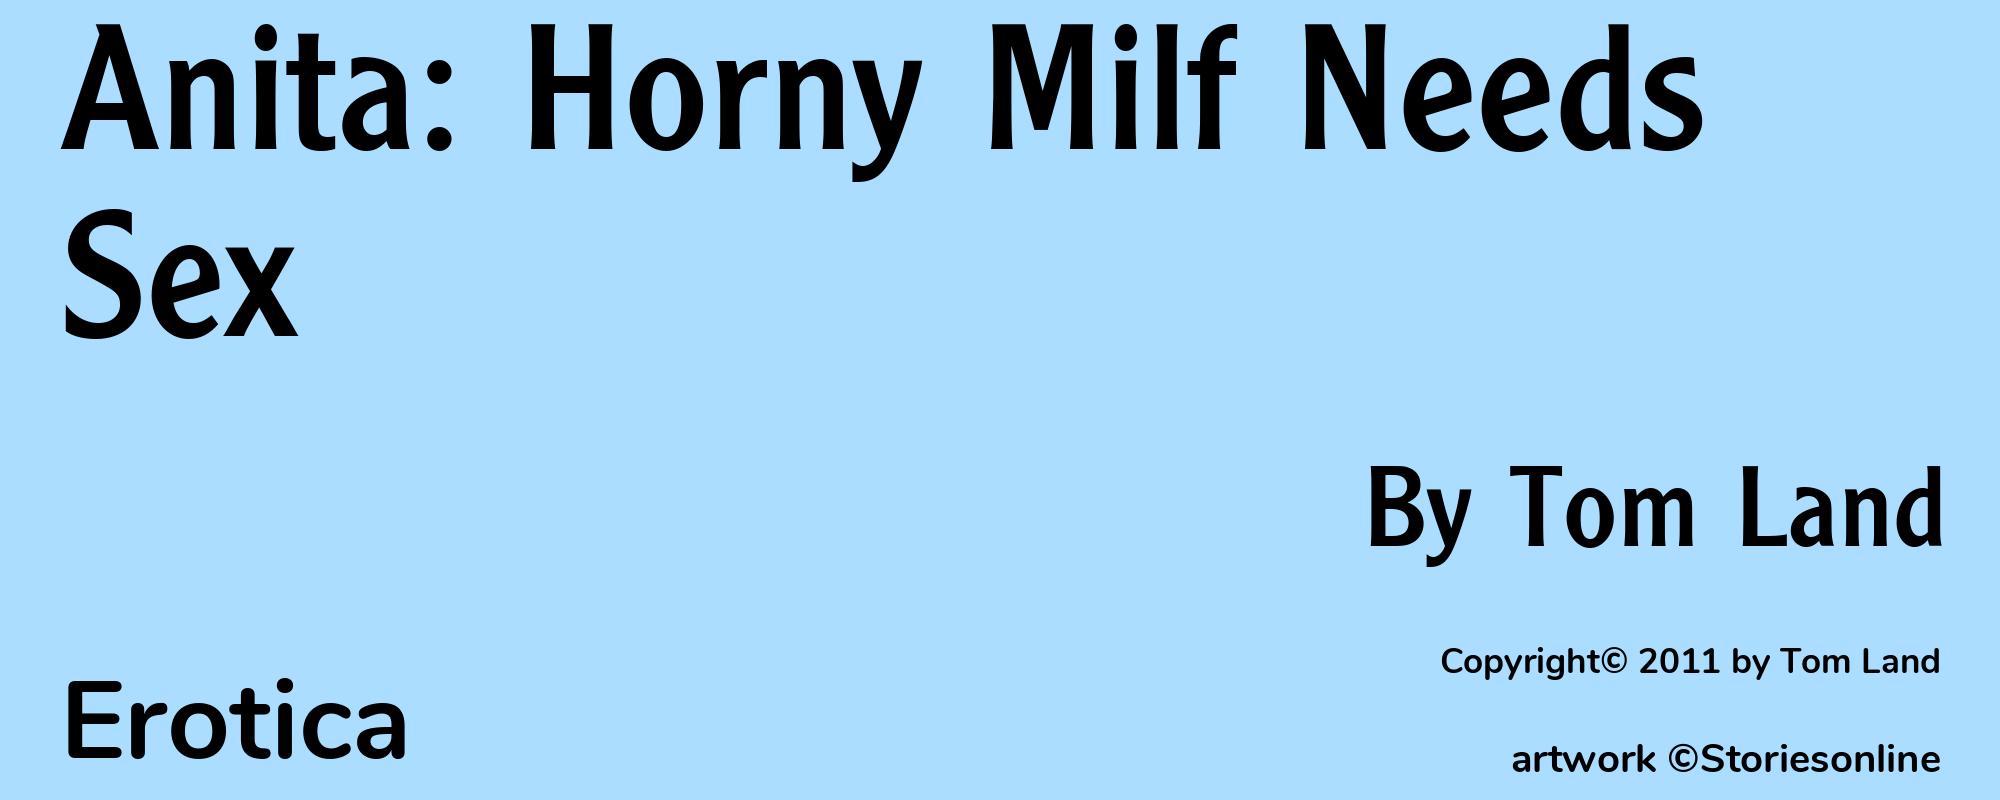 Anita: Horny Milf Needs Sex - Cover